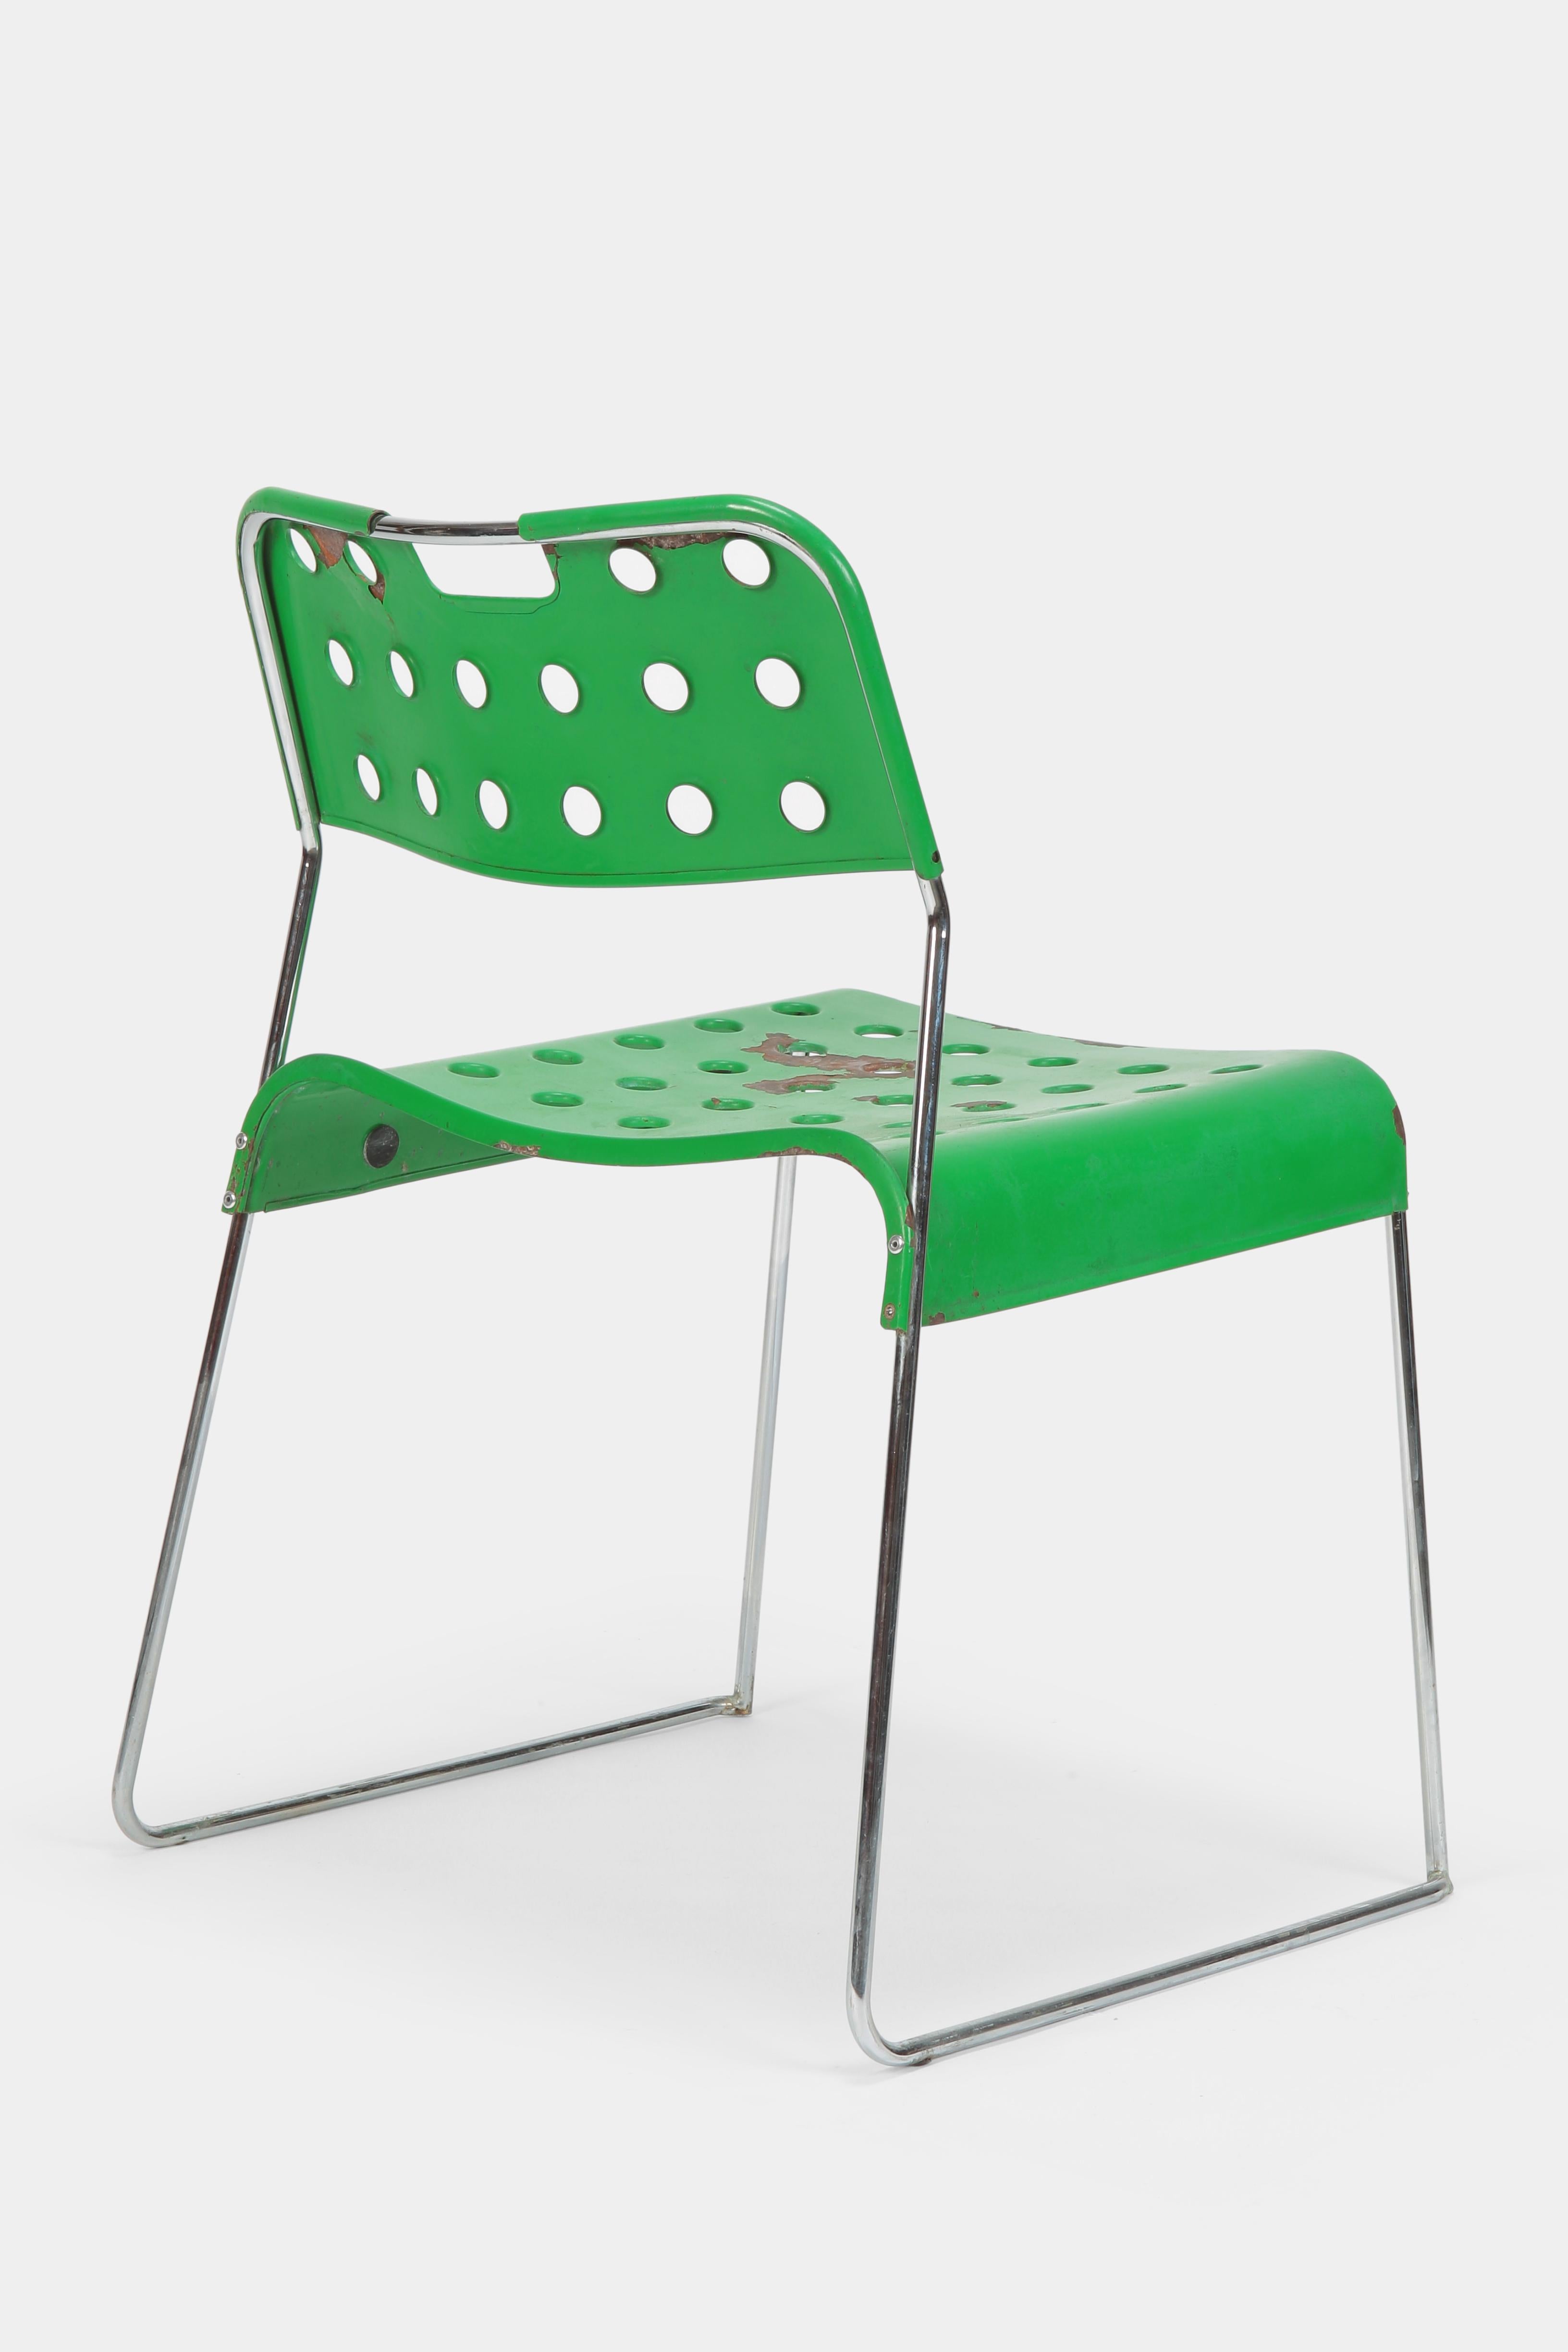 bieffeplast chair